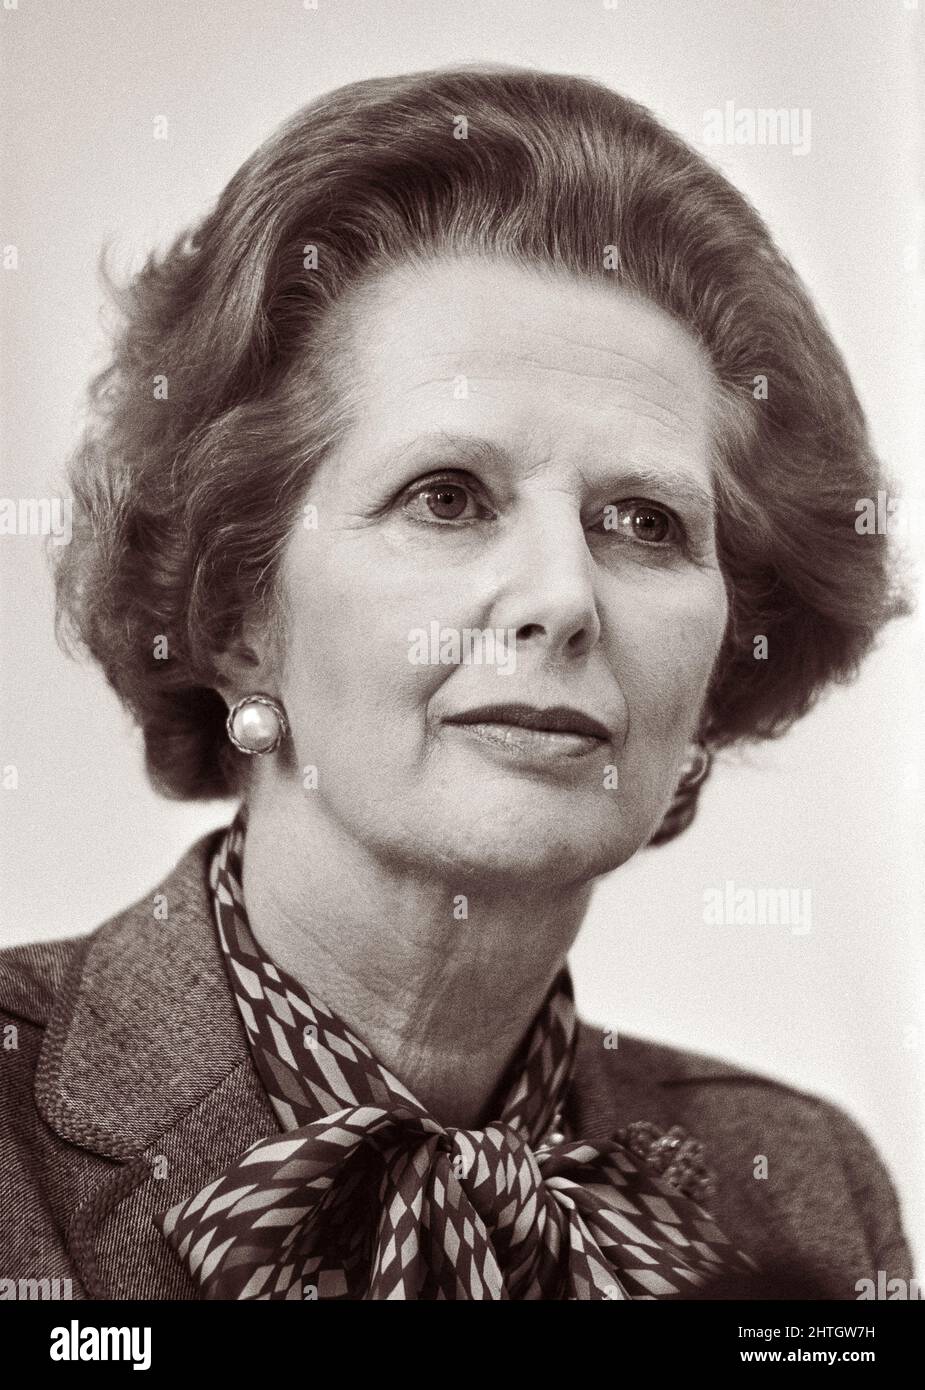 Die britische Premierministerin Margaret Thatcher (1925-2013) war die erste Frau, die das Amt der Premierministerin hatte, und war die am längsten amtierende britische Premierministerin des 20.. Jahrhunderts. Stockfoto